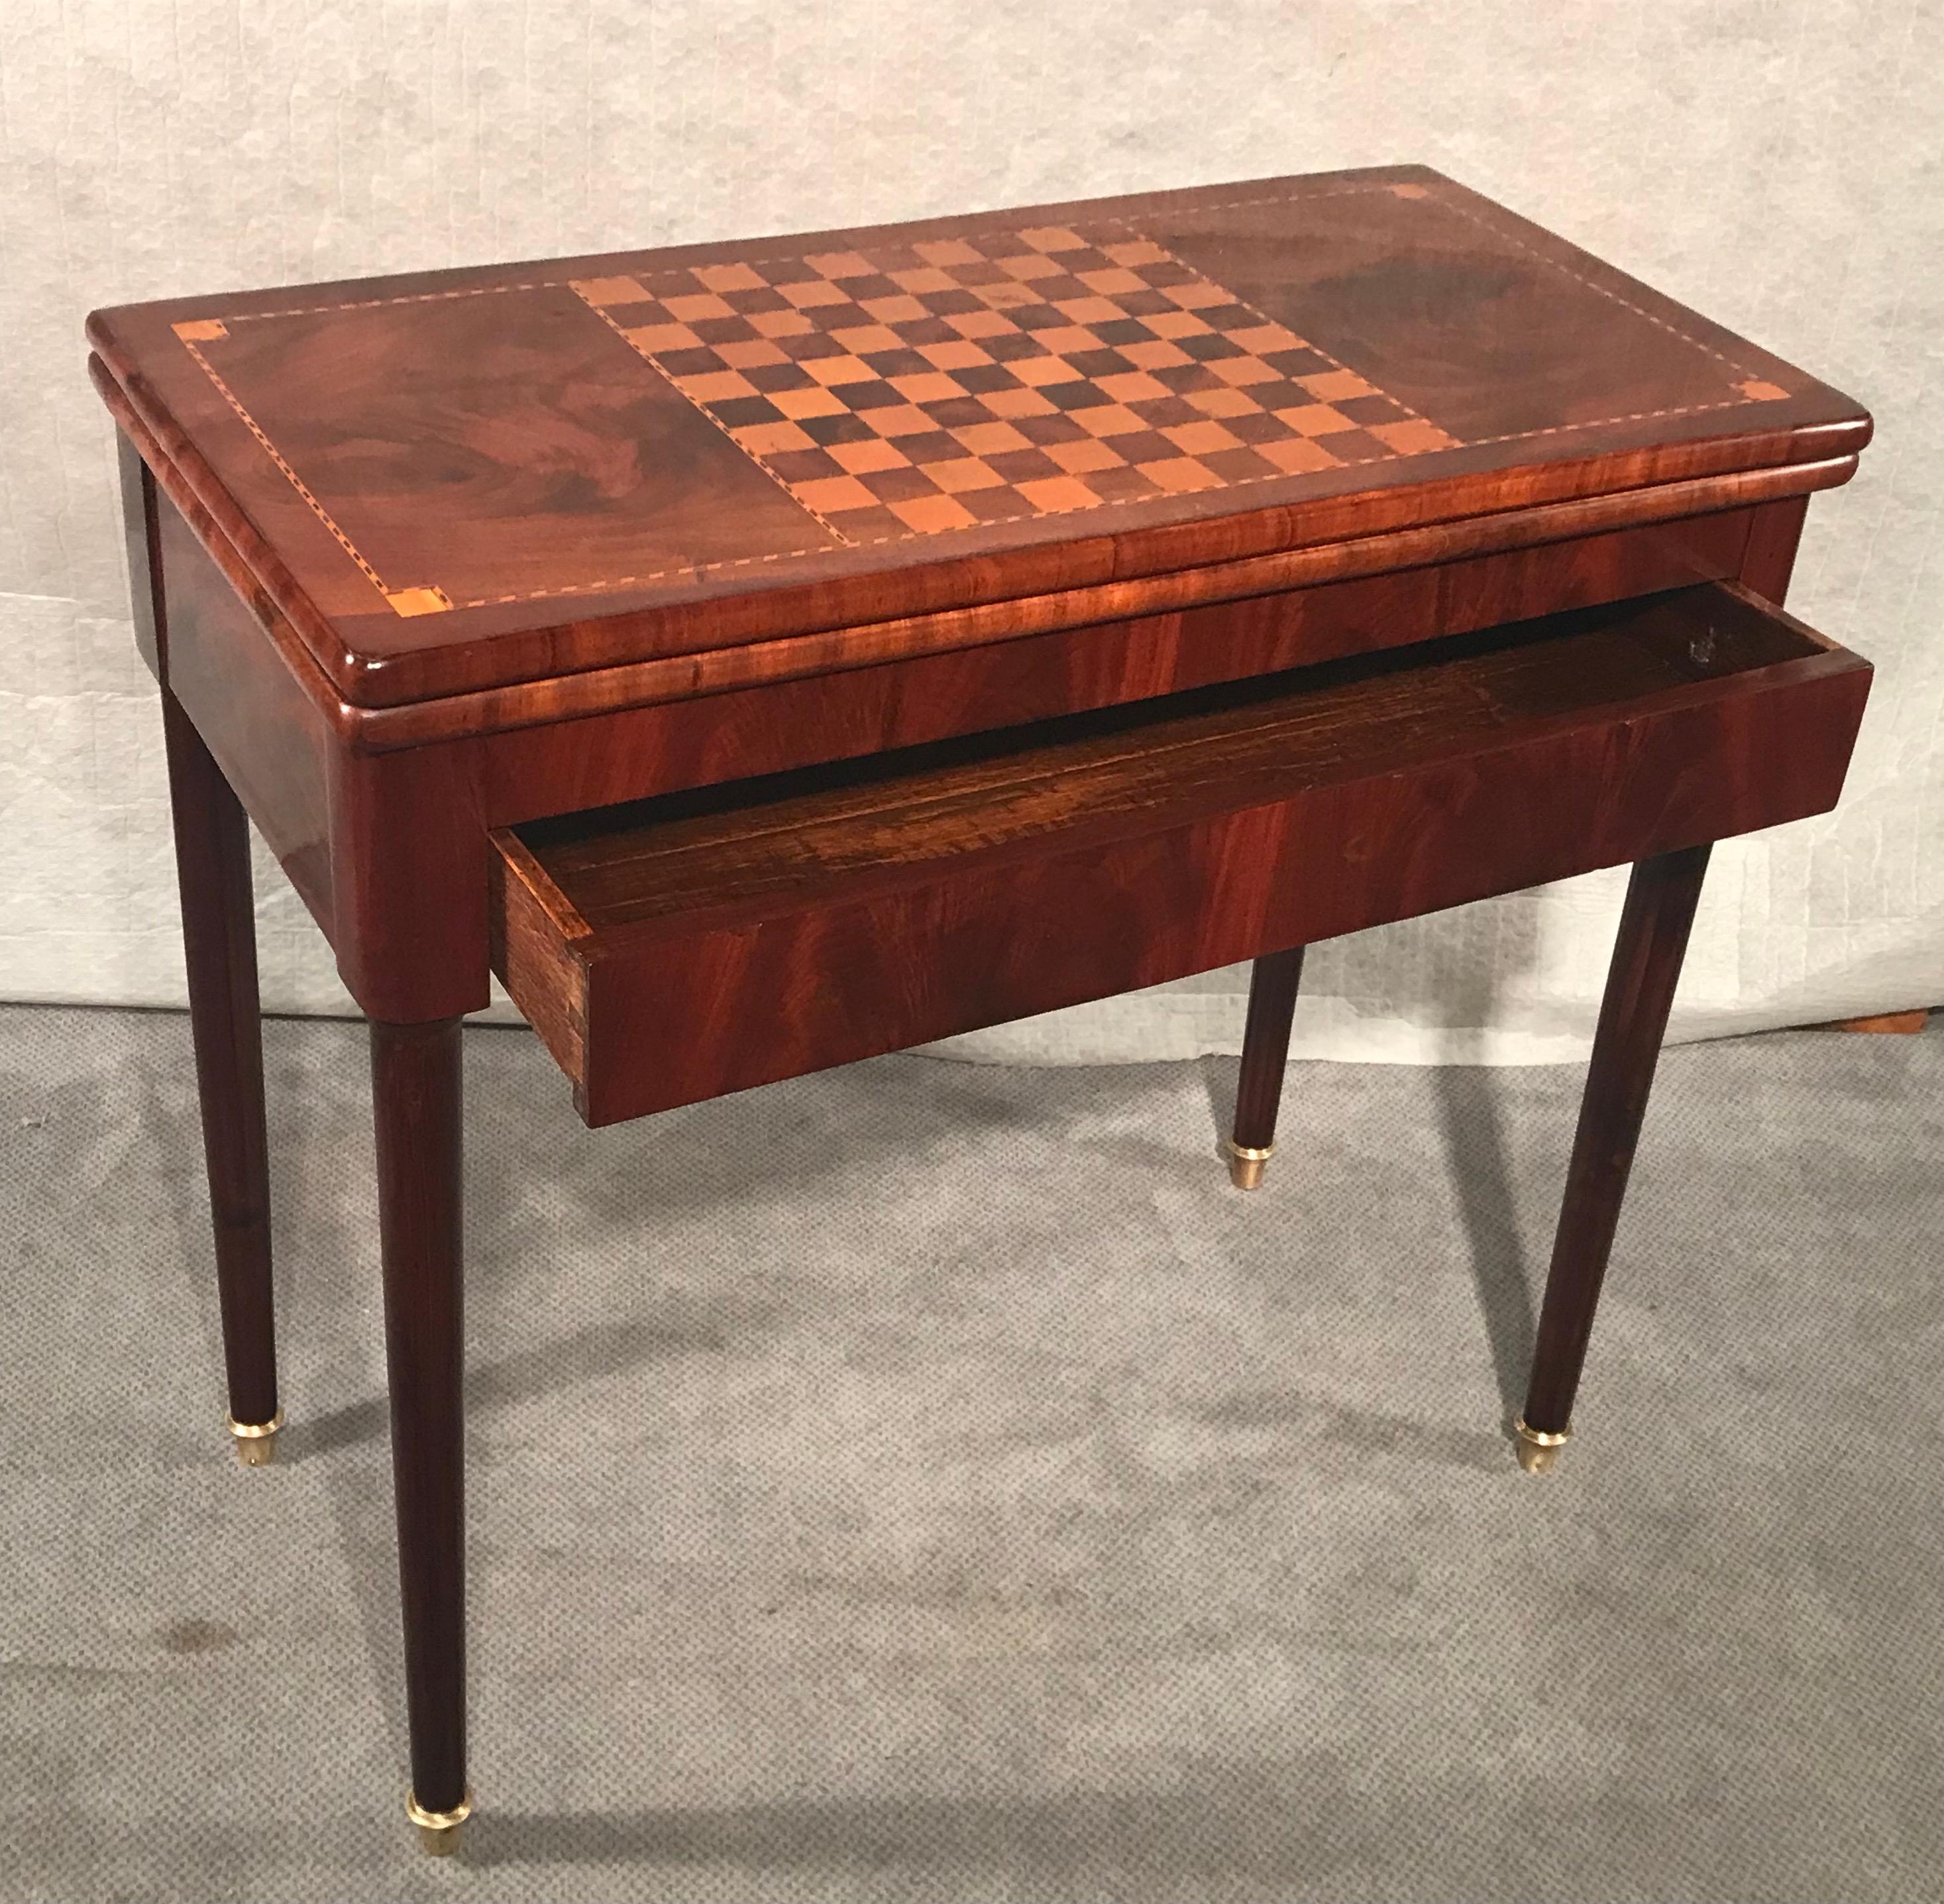 Cette table de jeu néoclassique de France date de 1810-20. Il comporte un échiquier sur le dessus qui est encadré par un élégant ruban incrusté. L'intérieur de la table est décoré d'un feutre vert. Le plateau déplié peut être tourné et repose alors